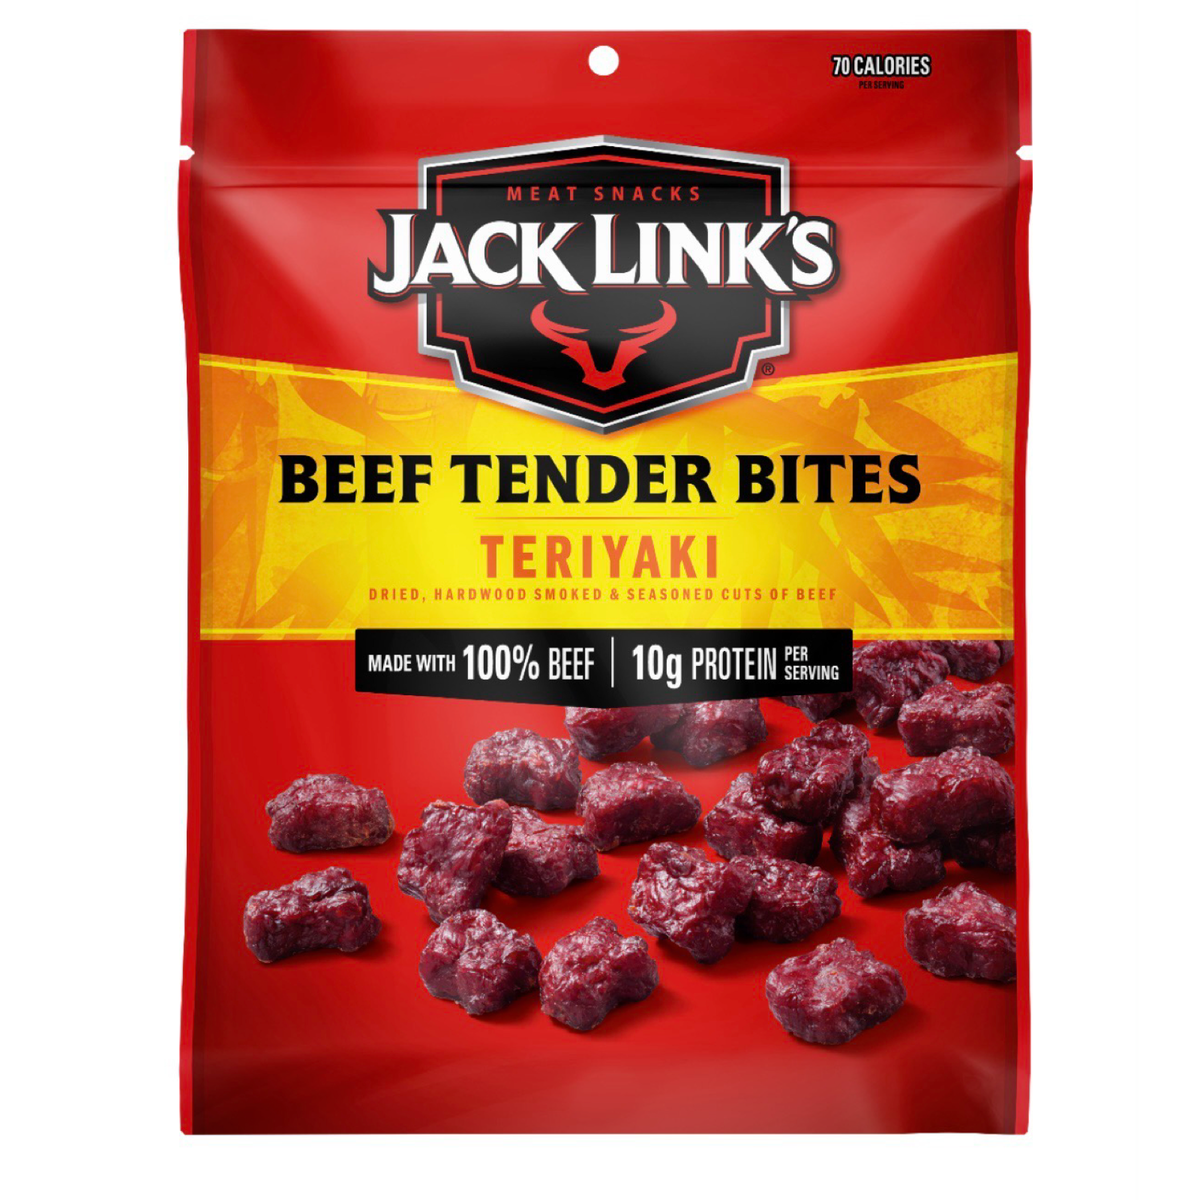 2pk 3.5oz Jack Link's Jerky Tender Bites - Beef Teriyaki & BBQ Pork